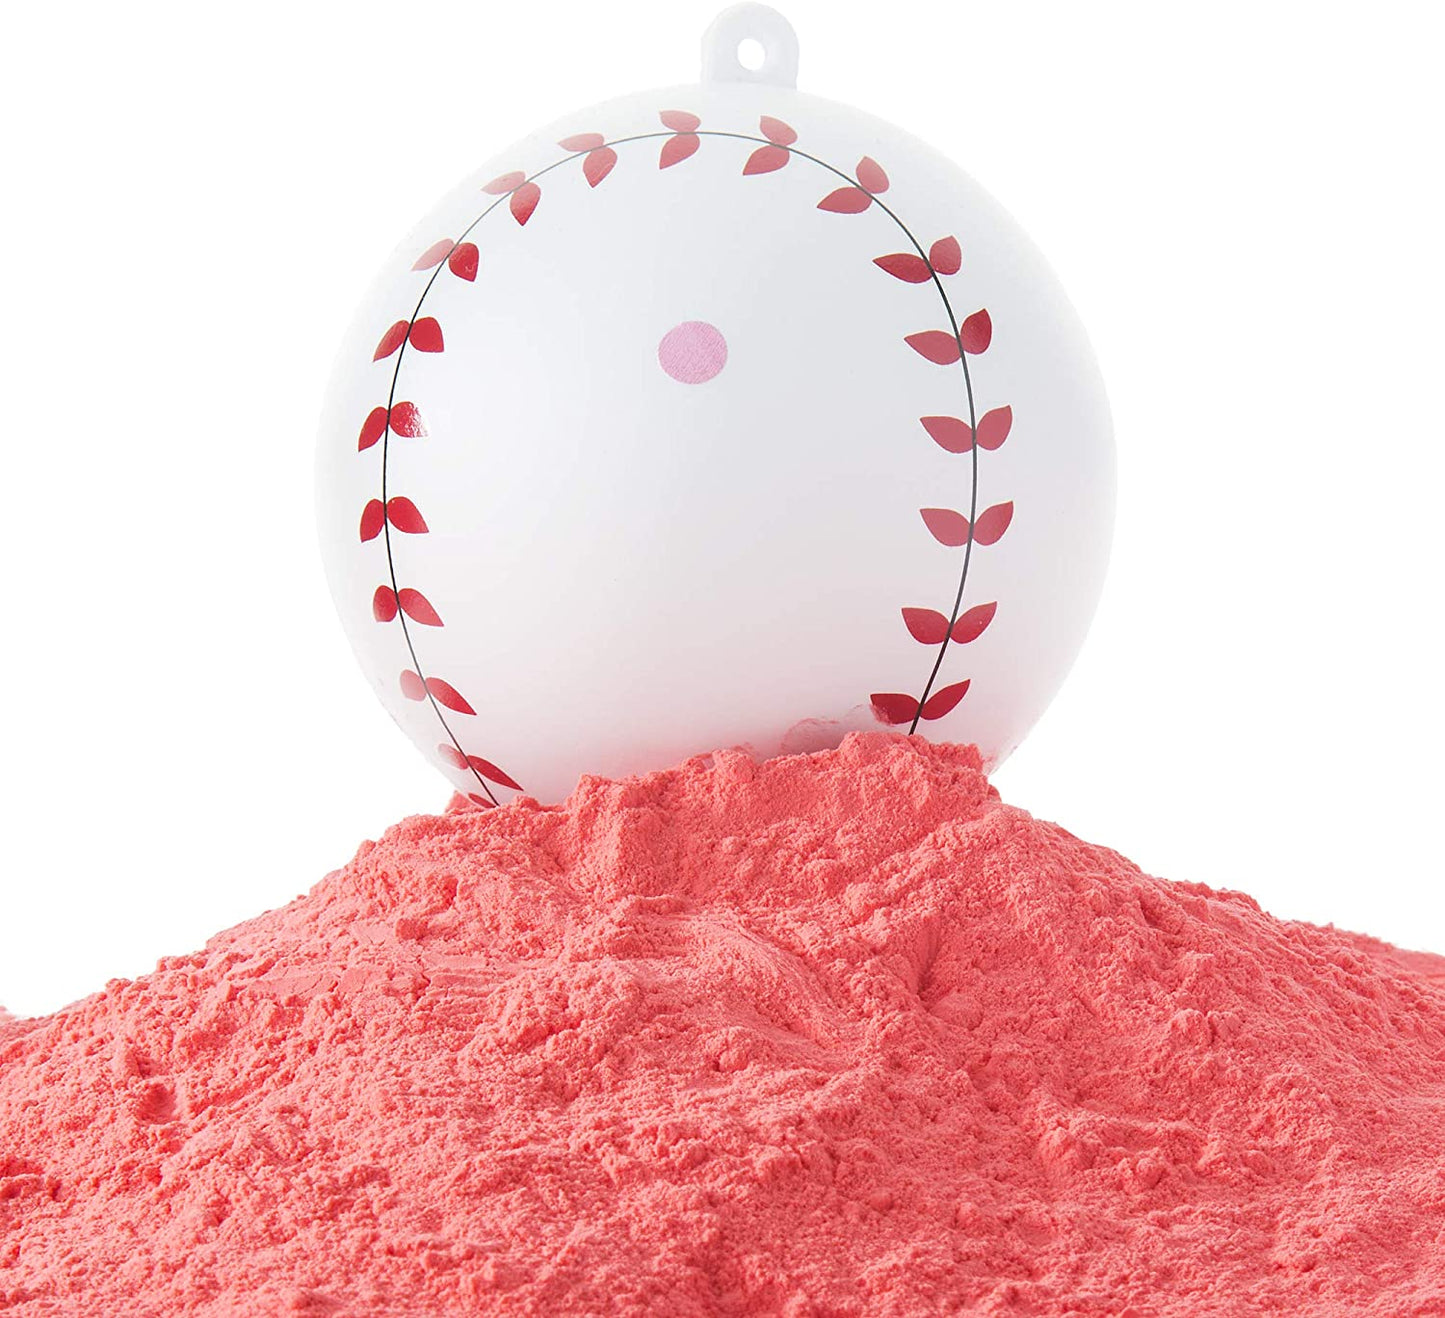 Gender Reveal Baseball | Blue Exploding Powder Baseball | Gender Reveal Party Ideas